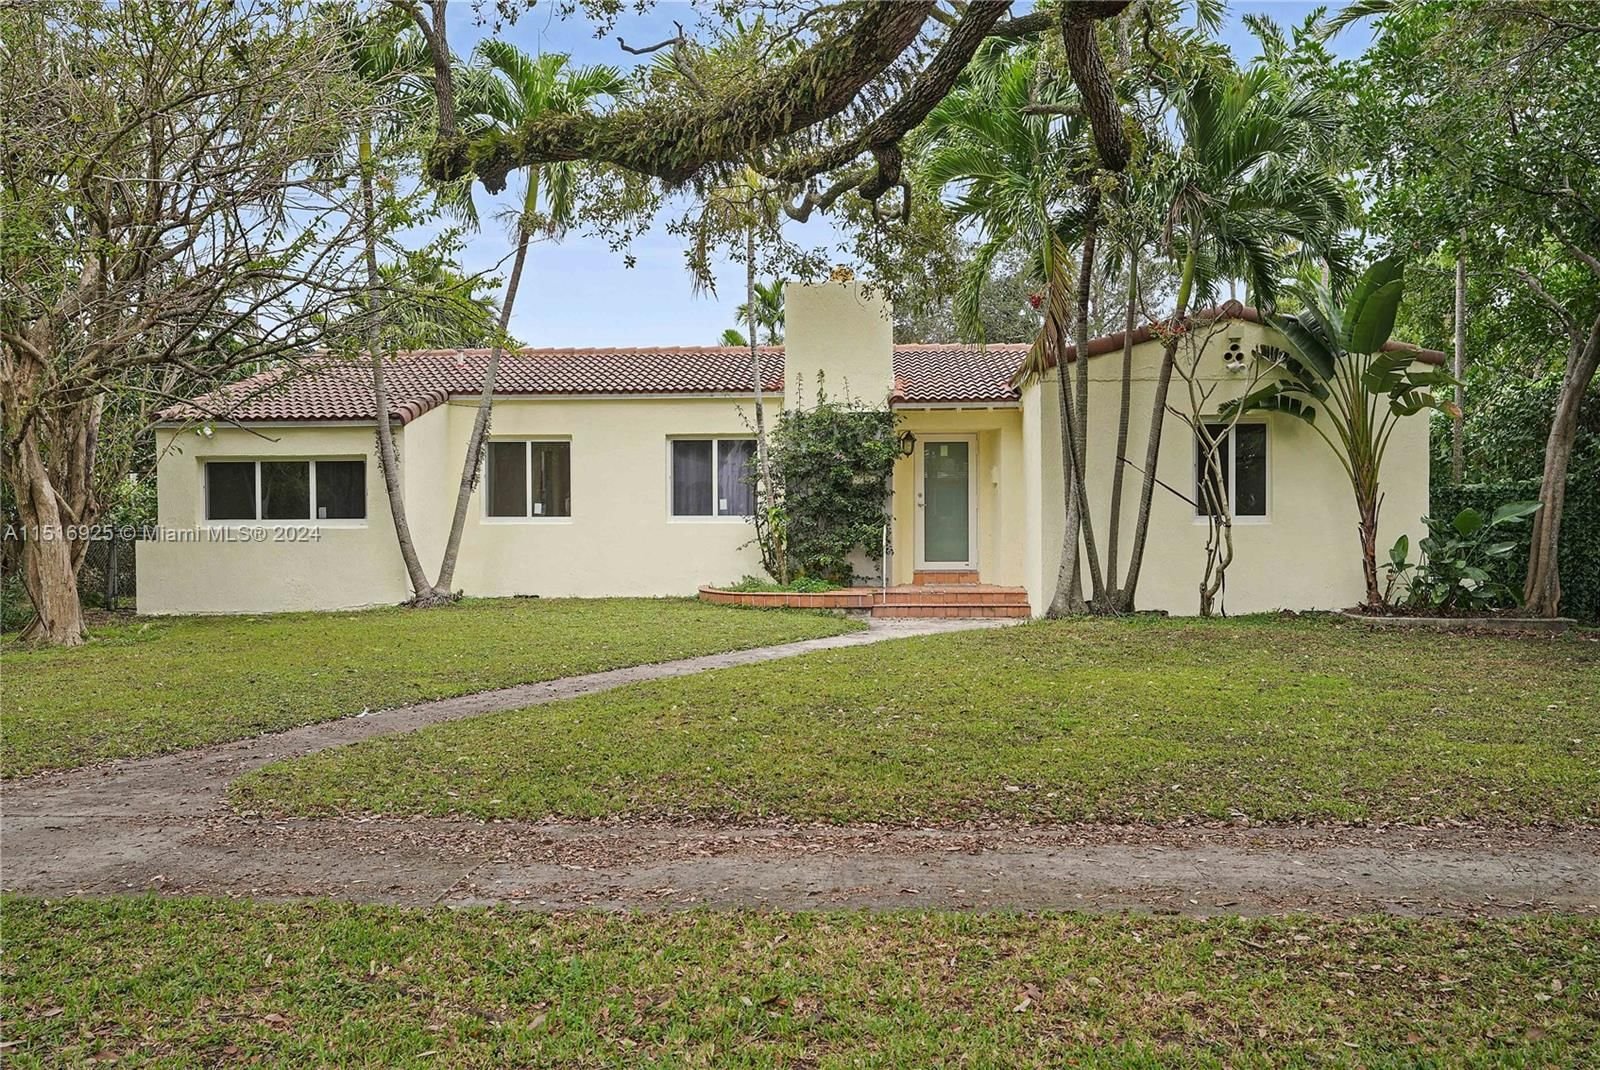 Real estate property located at 785 95th St, Miami-Dade County, MIAMI SHORES SEC 3, Miami Shores, FL